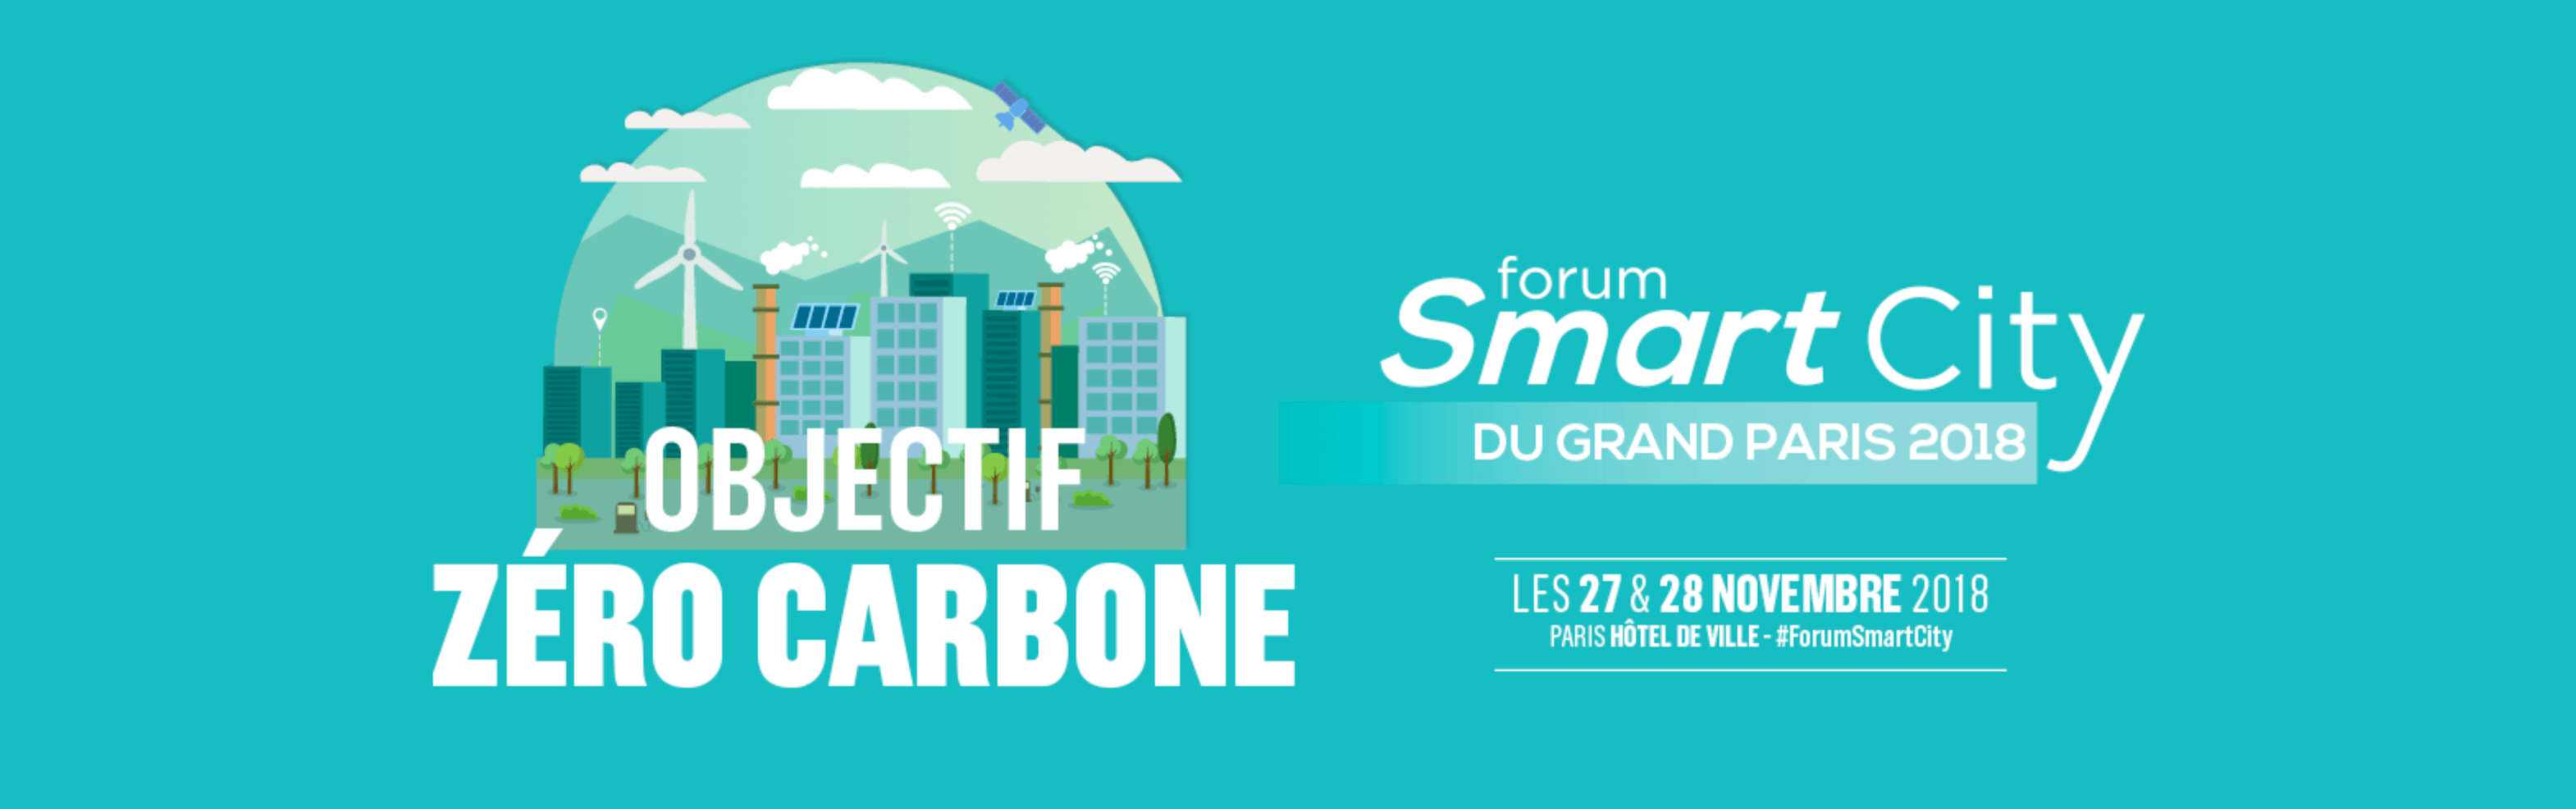 Forum Smart City du Grand Paris 2018